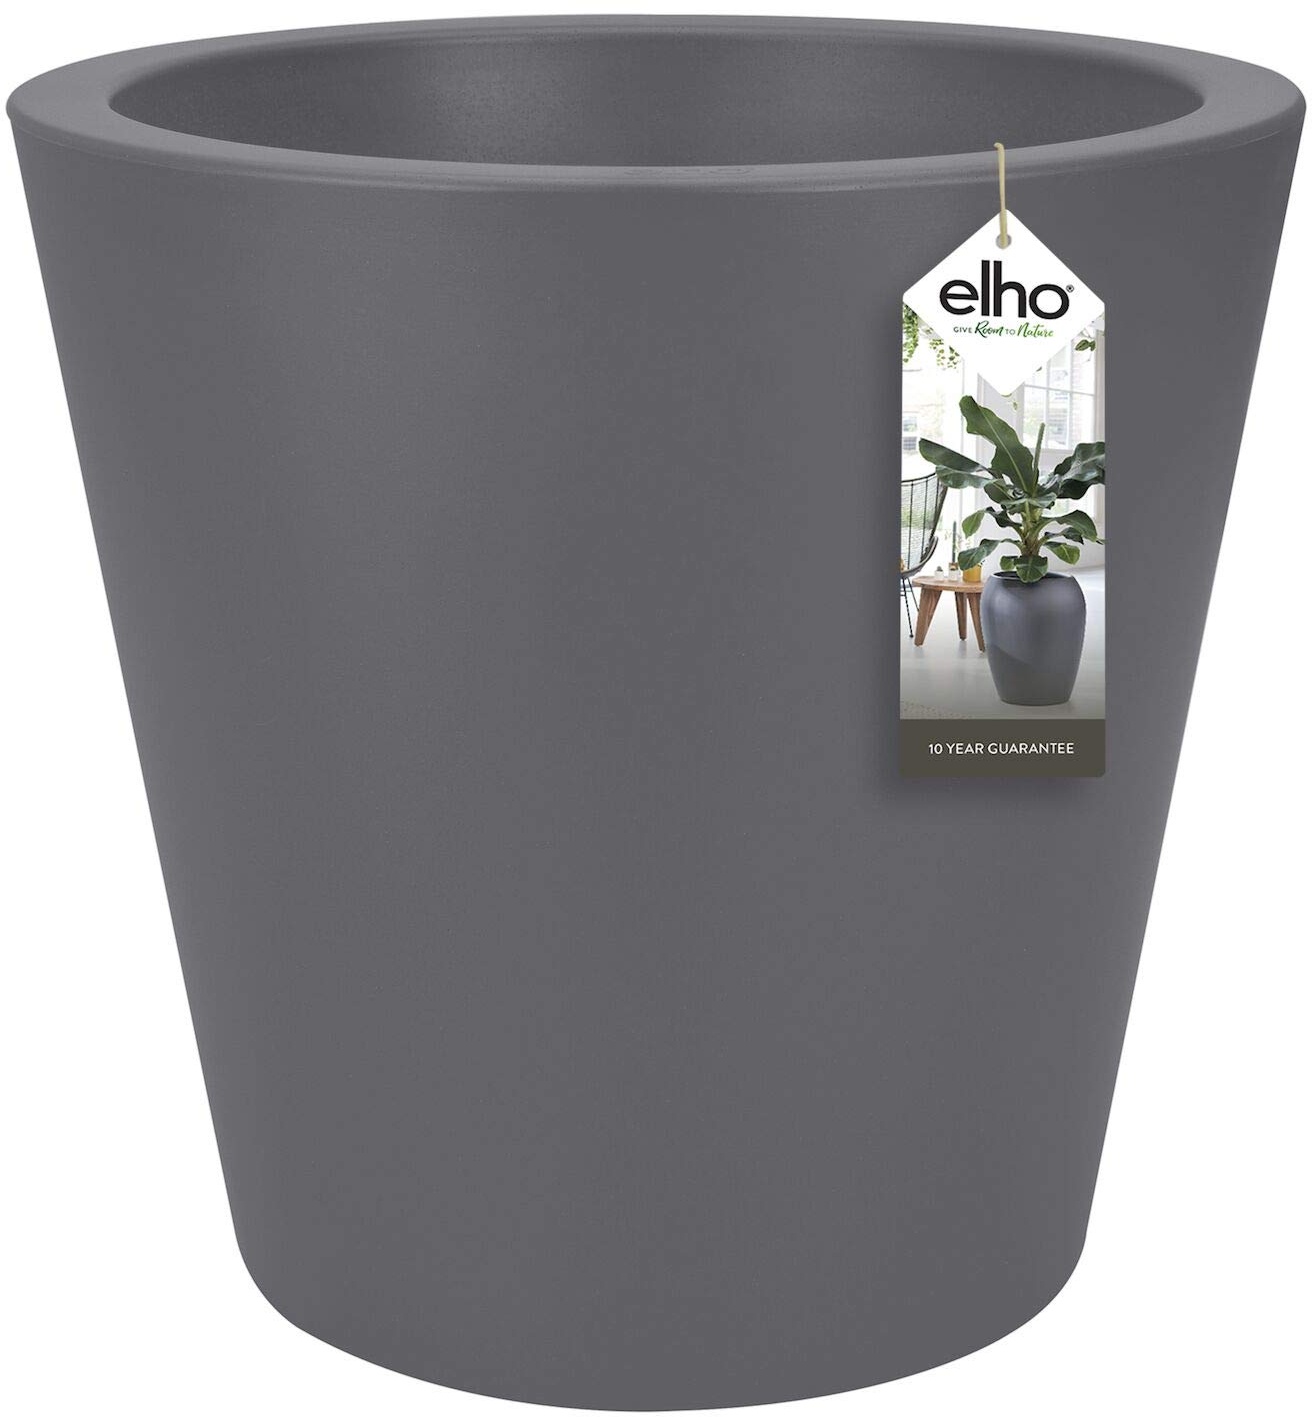 elho Pure Straight Round 50 - Blumentopf für Innen & Außen - Ø 49.5 x H 51.0 cm - Schwarz/Anthrazit